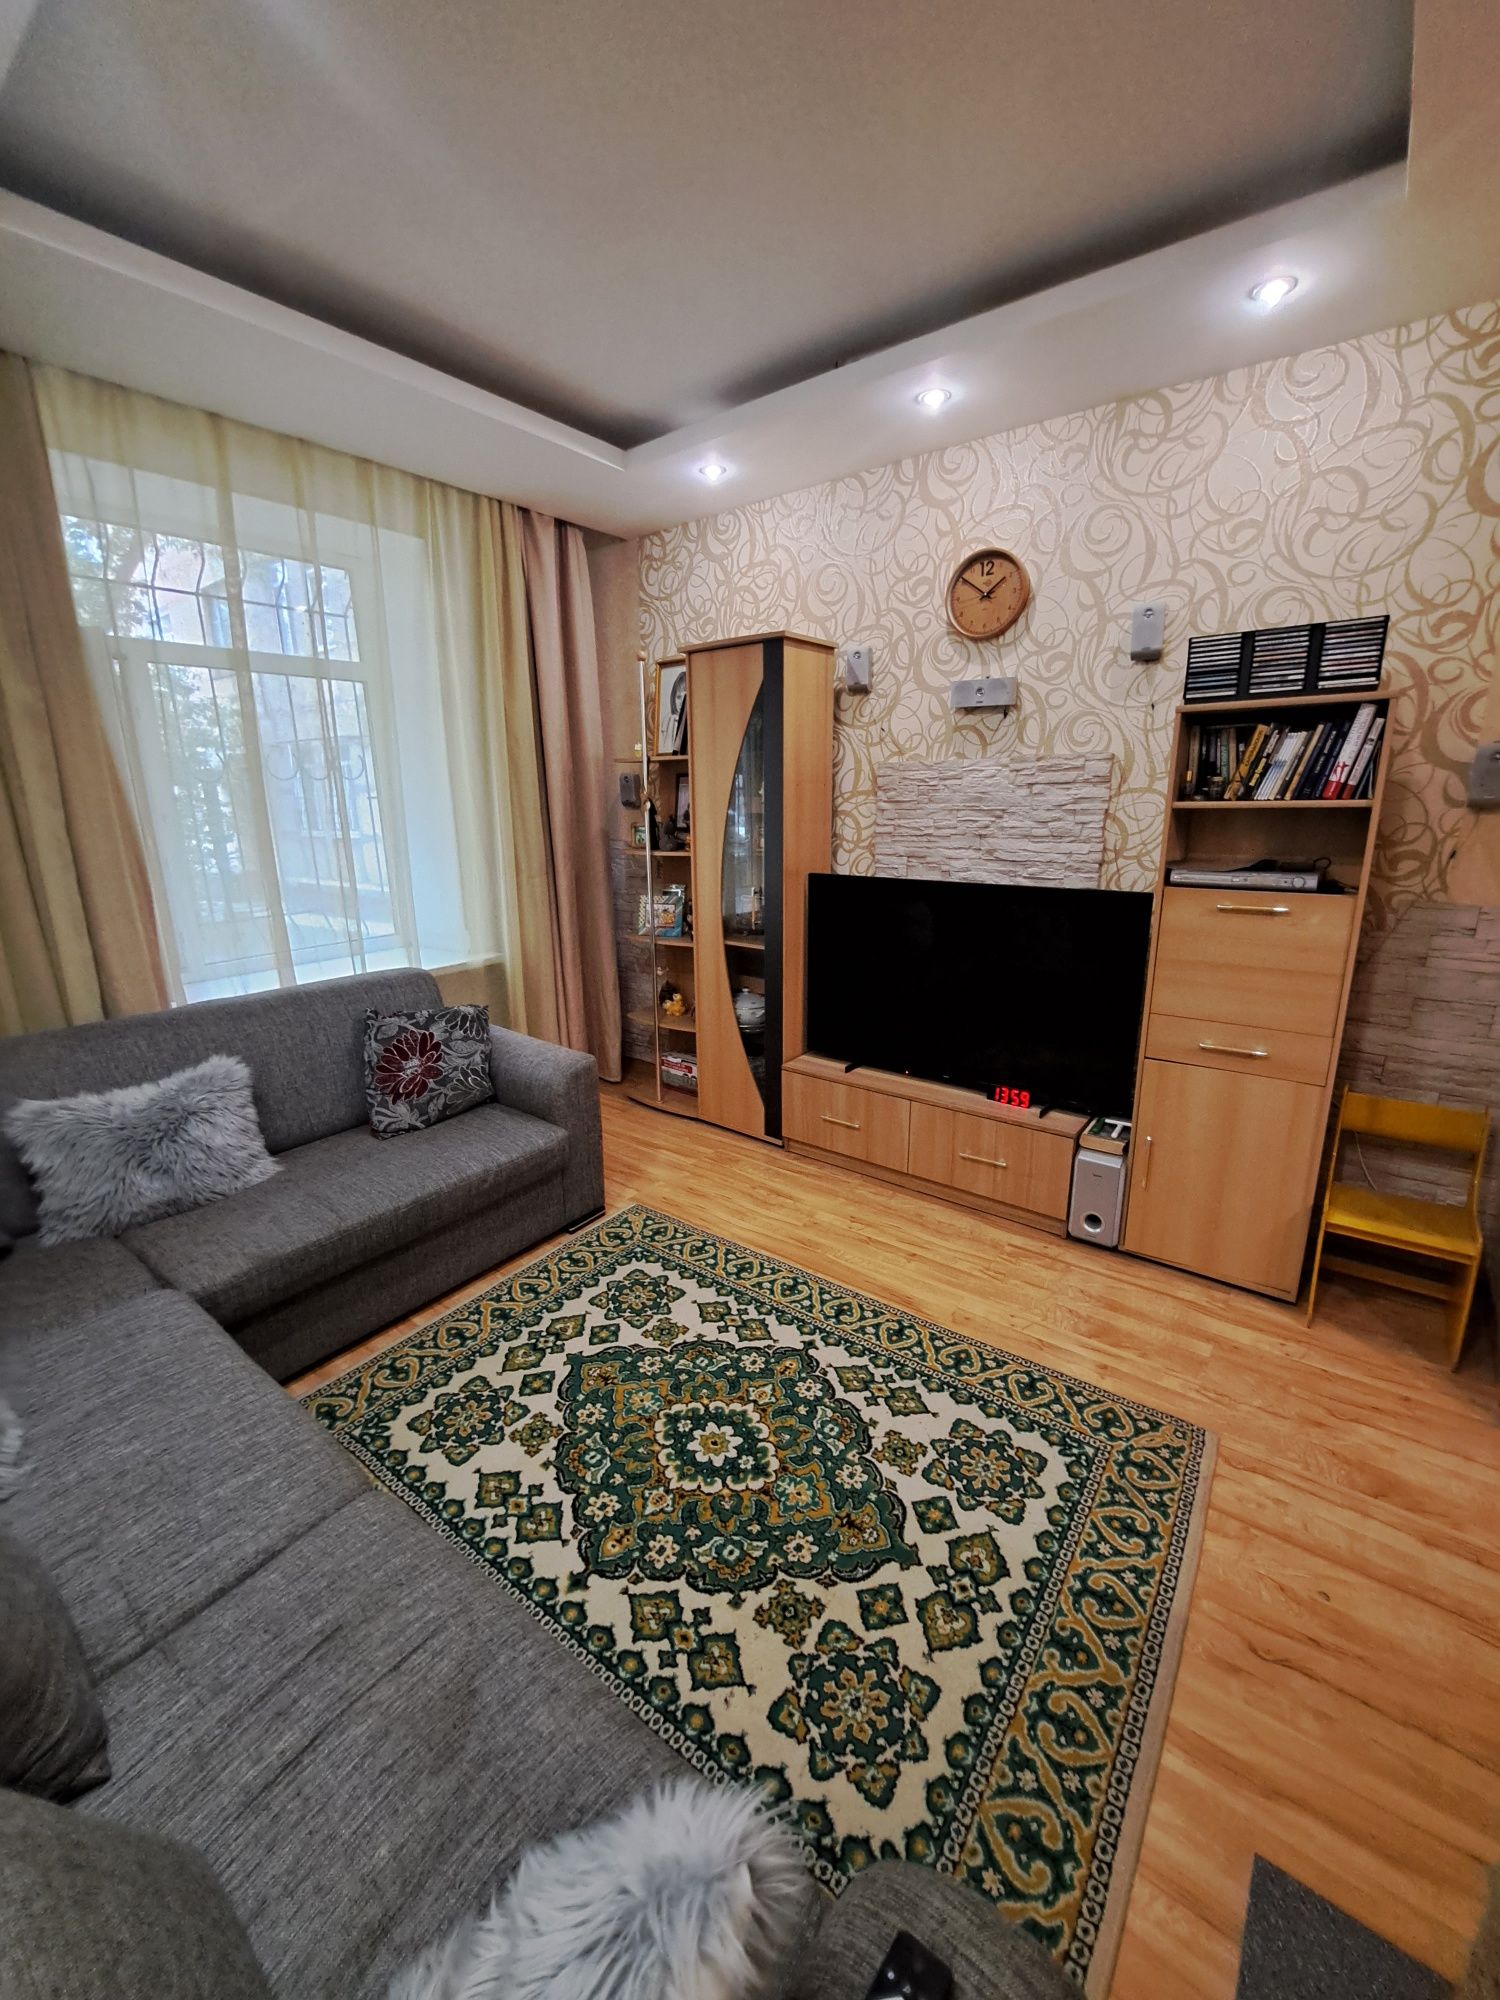 Продаём трехкомнатную квартиру болгарского типа в Восточной части